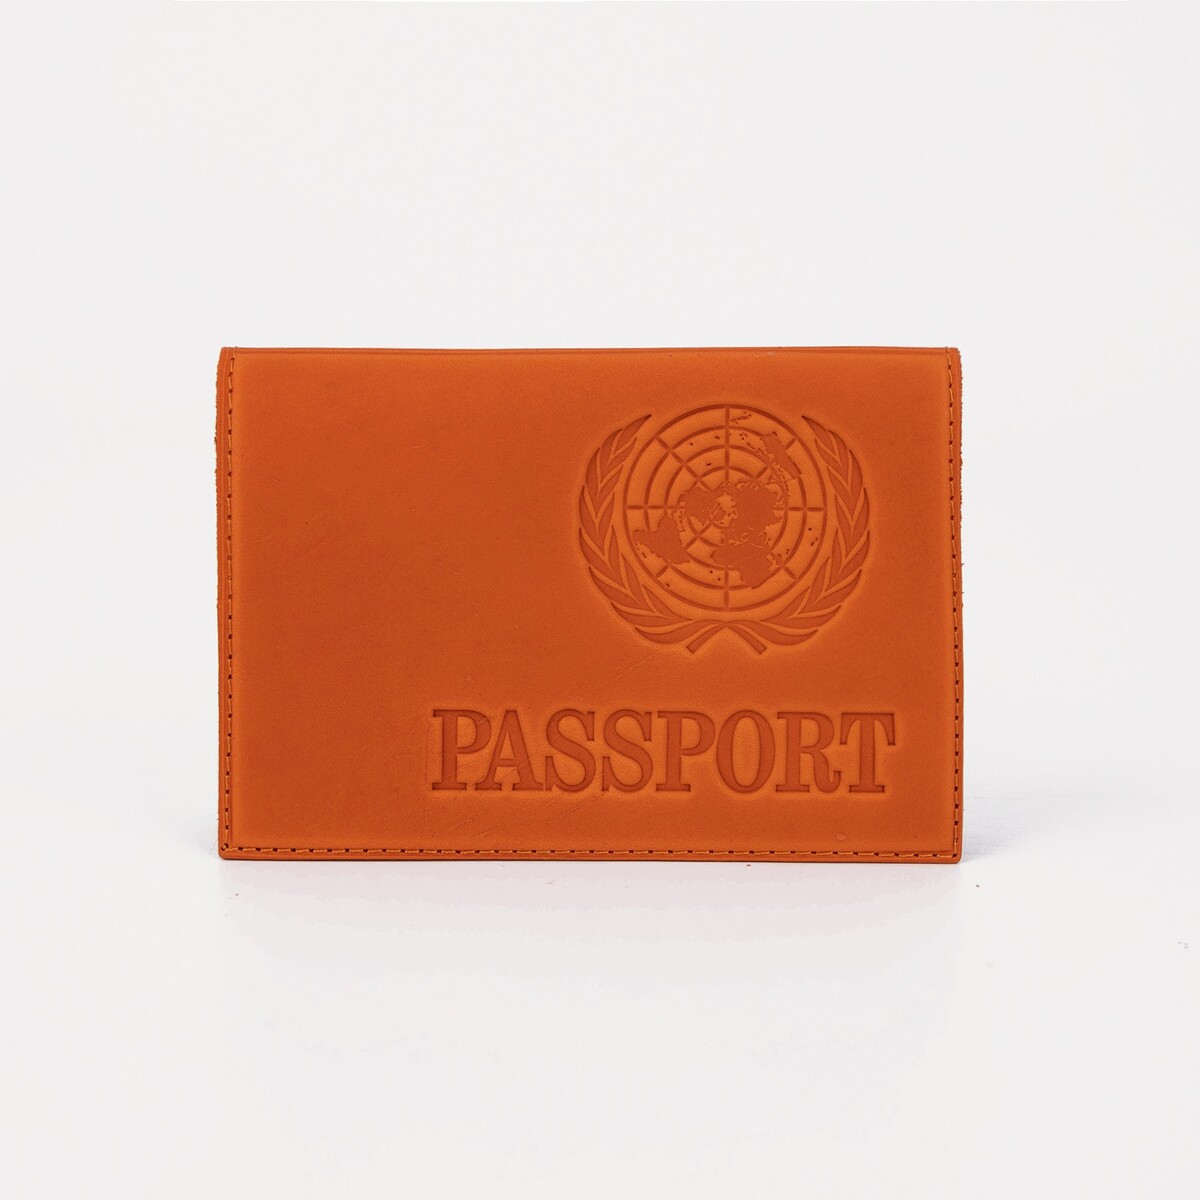 Обложка для паспорта, тиснение, латинские буквы, цвет рыжий по закону буквы